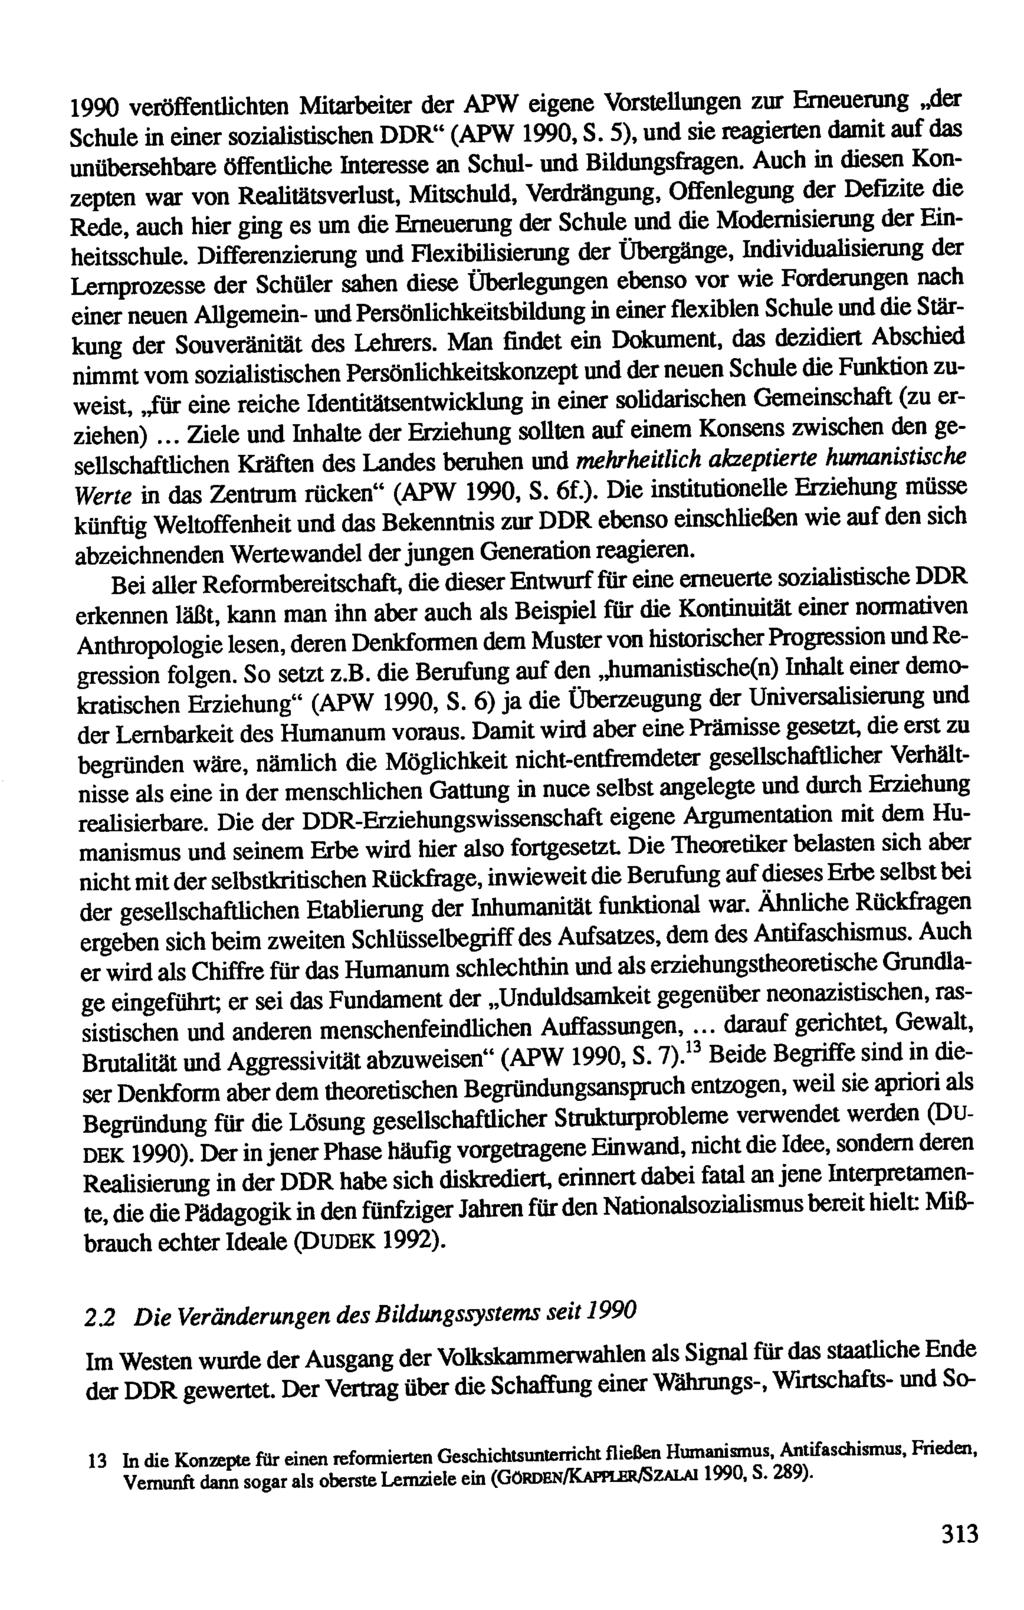 1990 veröffenthchten Mitarbeiter der APW eigene VorsteUungen zur Erneuerung,4er Schule in emer sozialistischen DDR" (APW 1990, S.